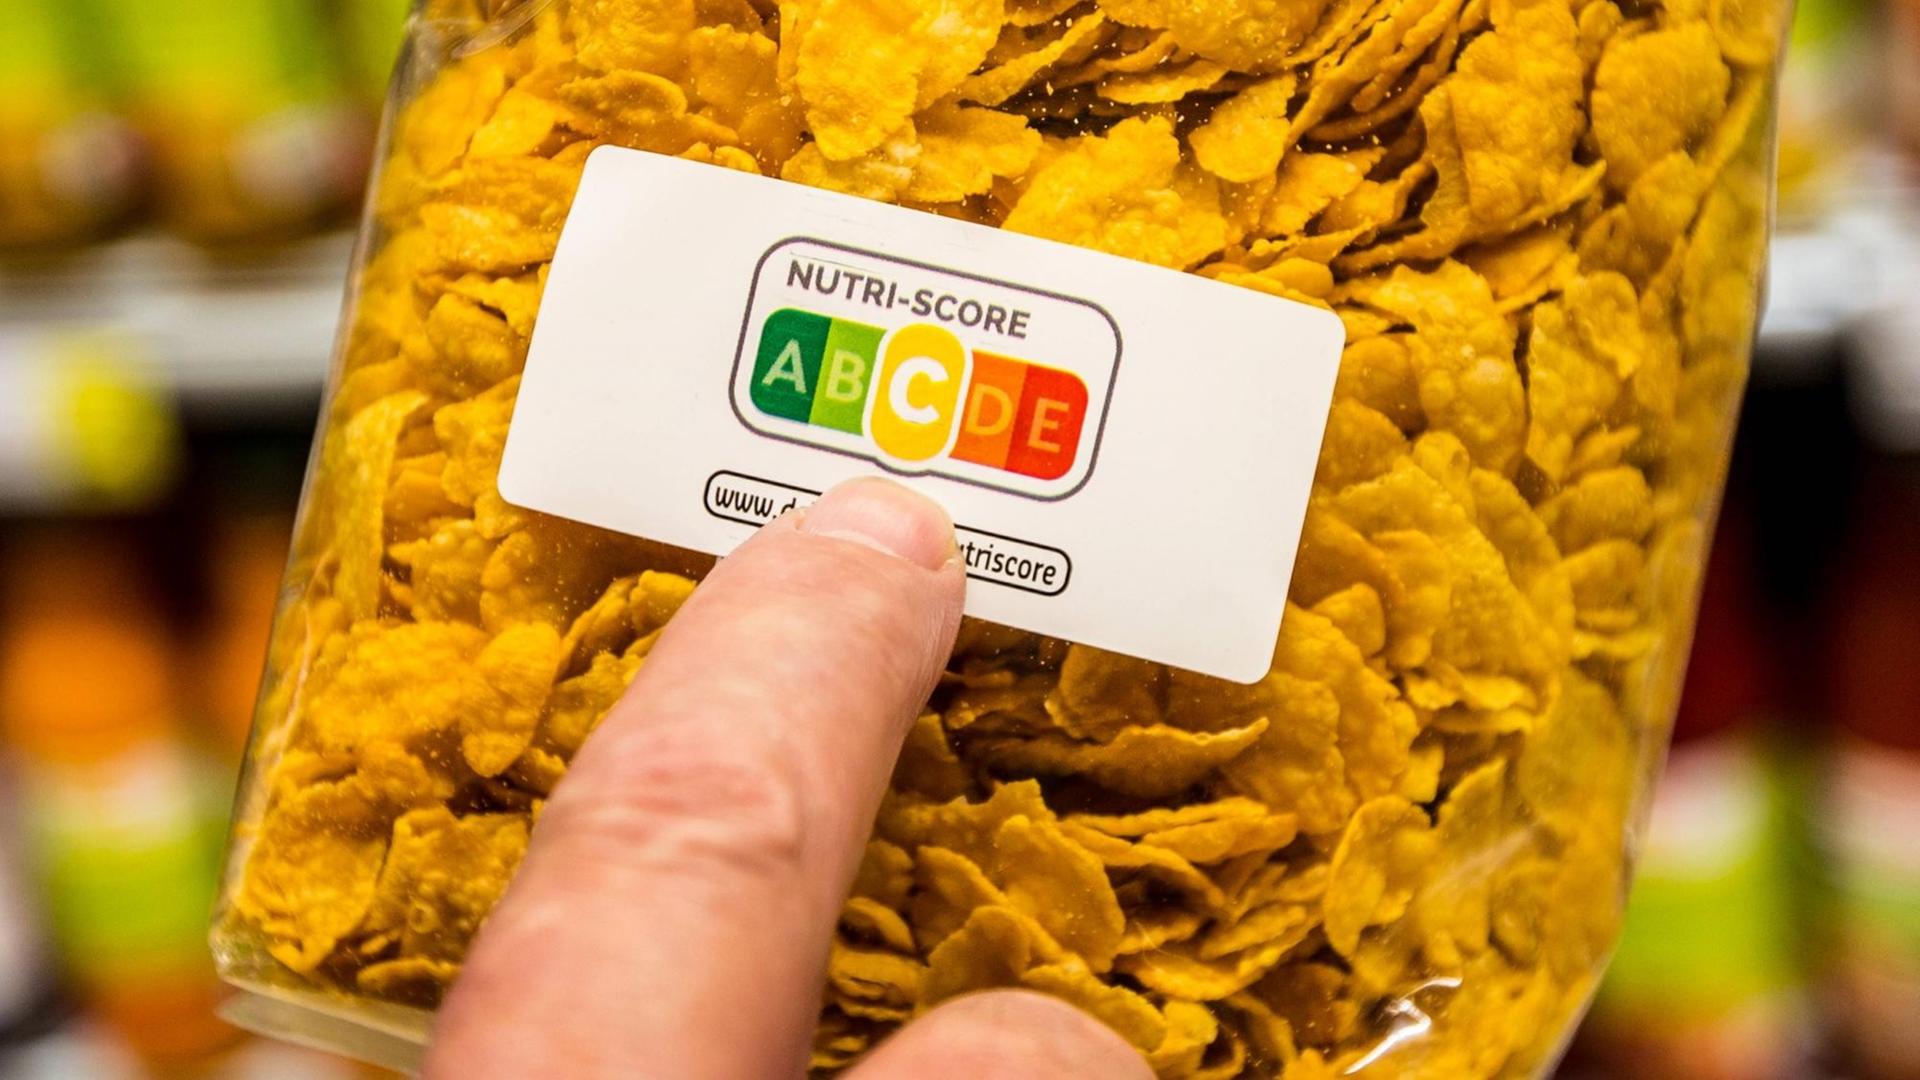 Eine Packung Cornflakes, ein Zeigefinger deutet auf die Farbflächen des Nutri-Score-Aufdrucks. Die mittlere Kategorie "C" (gelb) ist hervorgehoben.